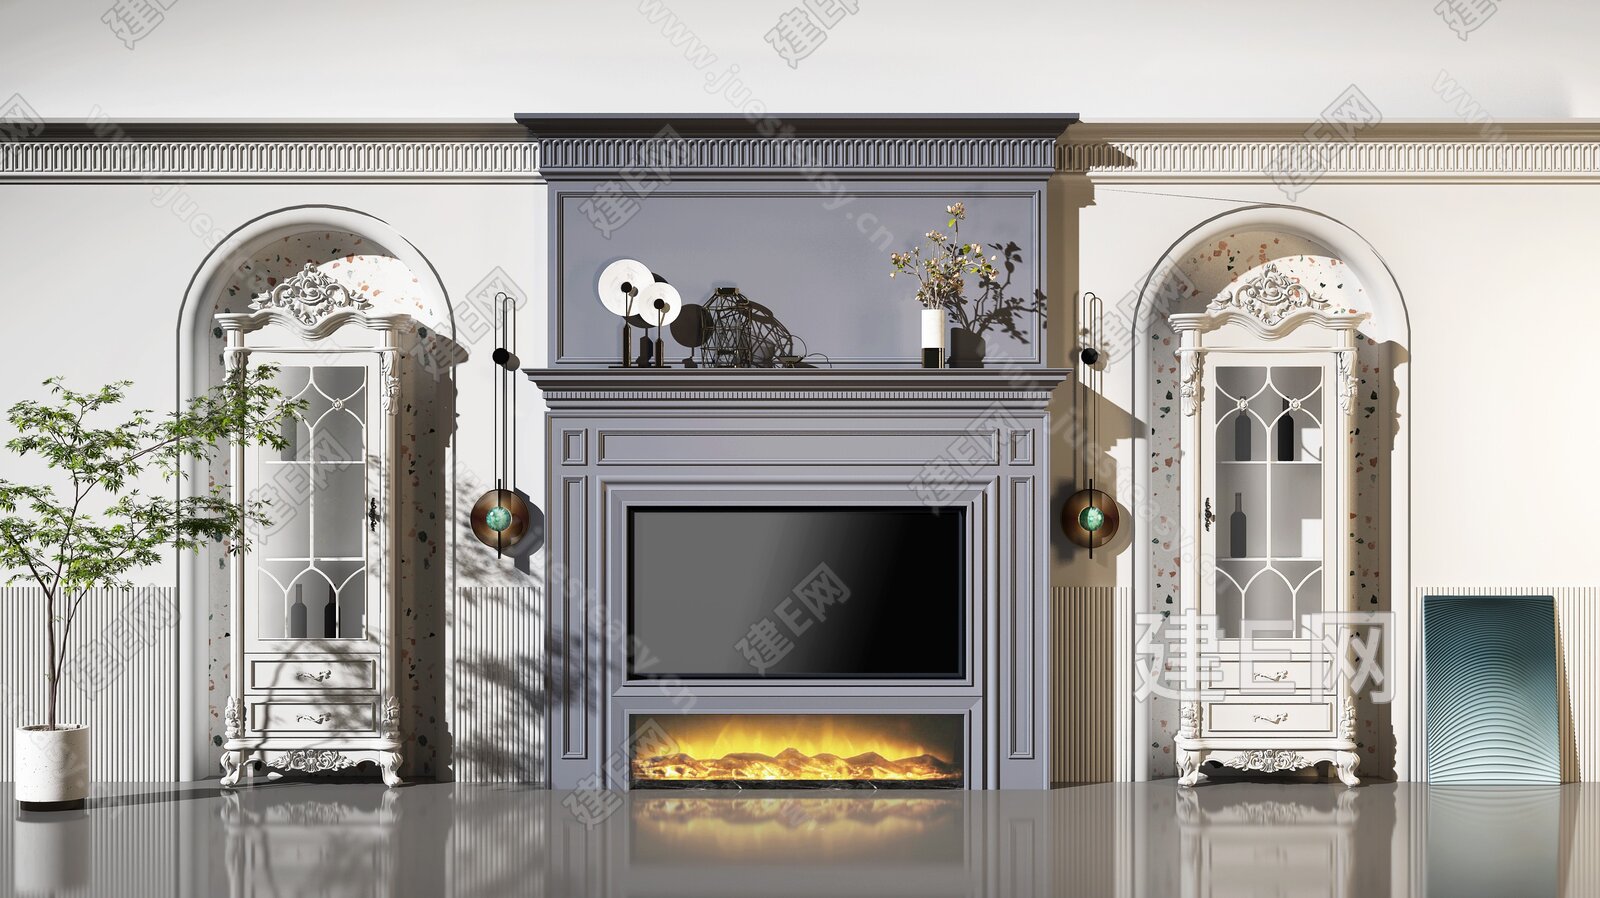 3d雾化壁炉 嵌入式电视背景墙装饰柜电子仿真假火焰 壁炉芯加湿器-阿里巴巴